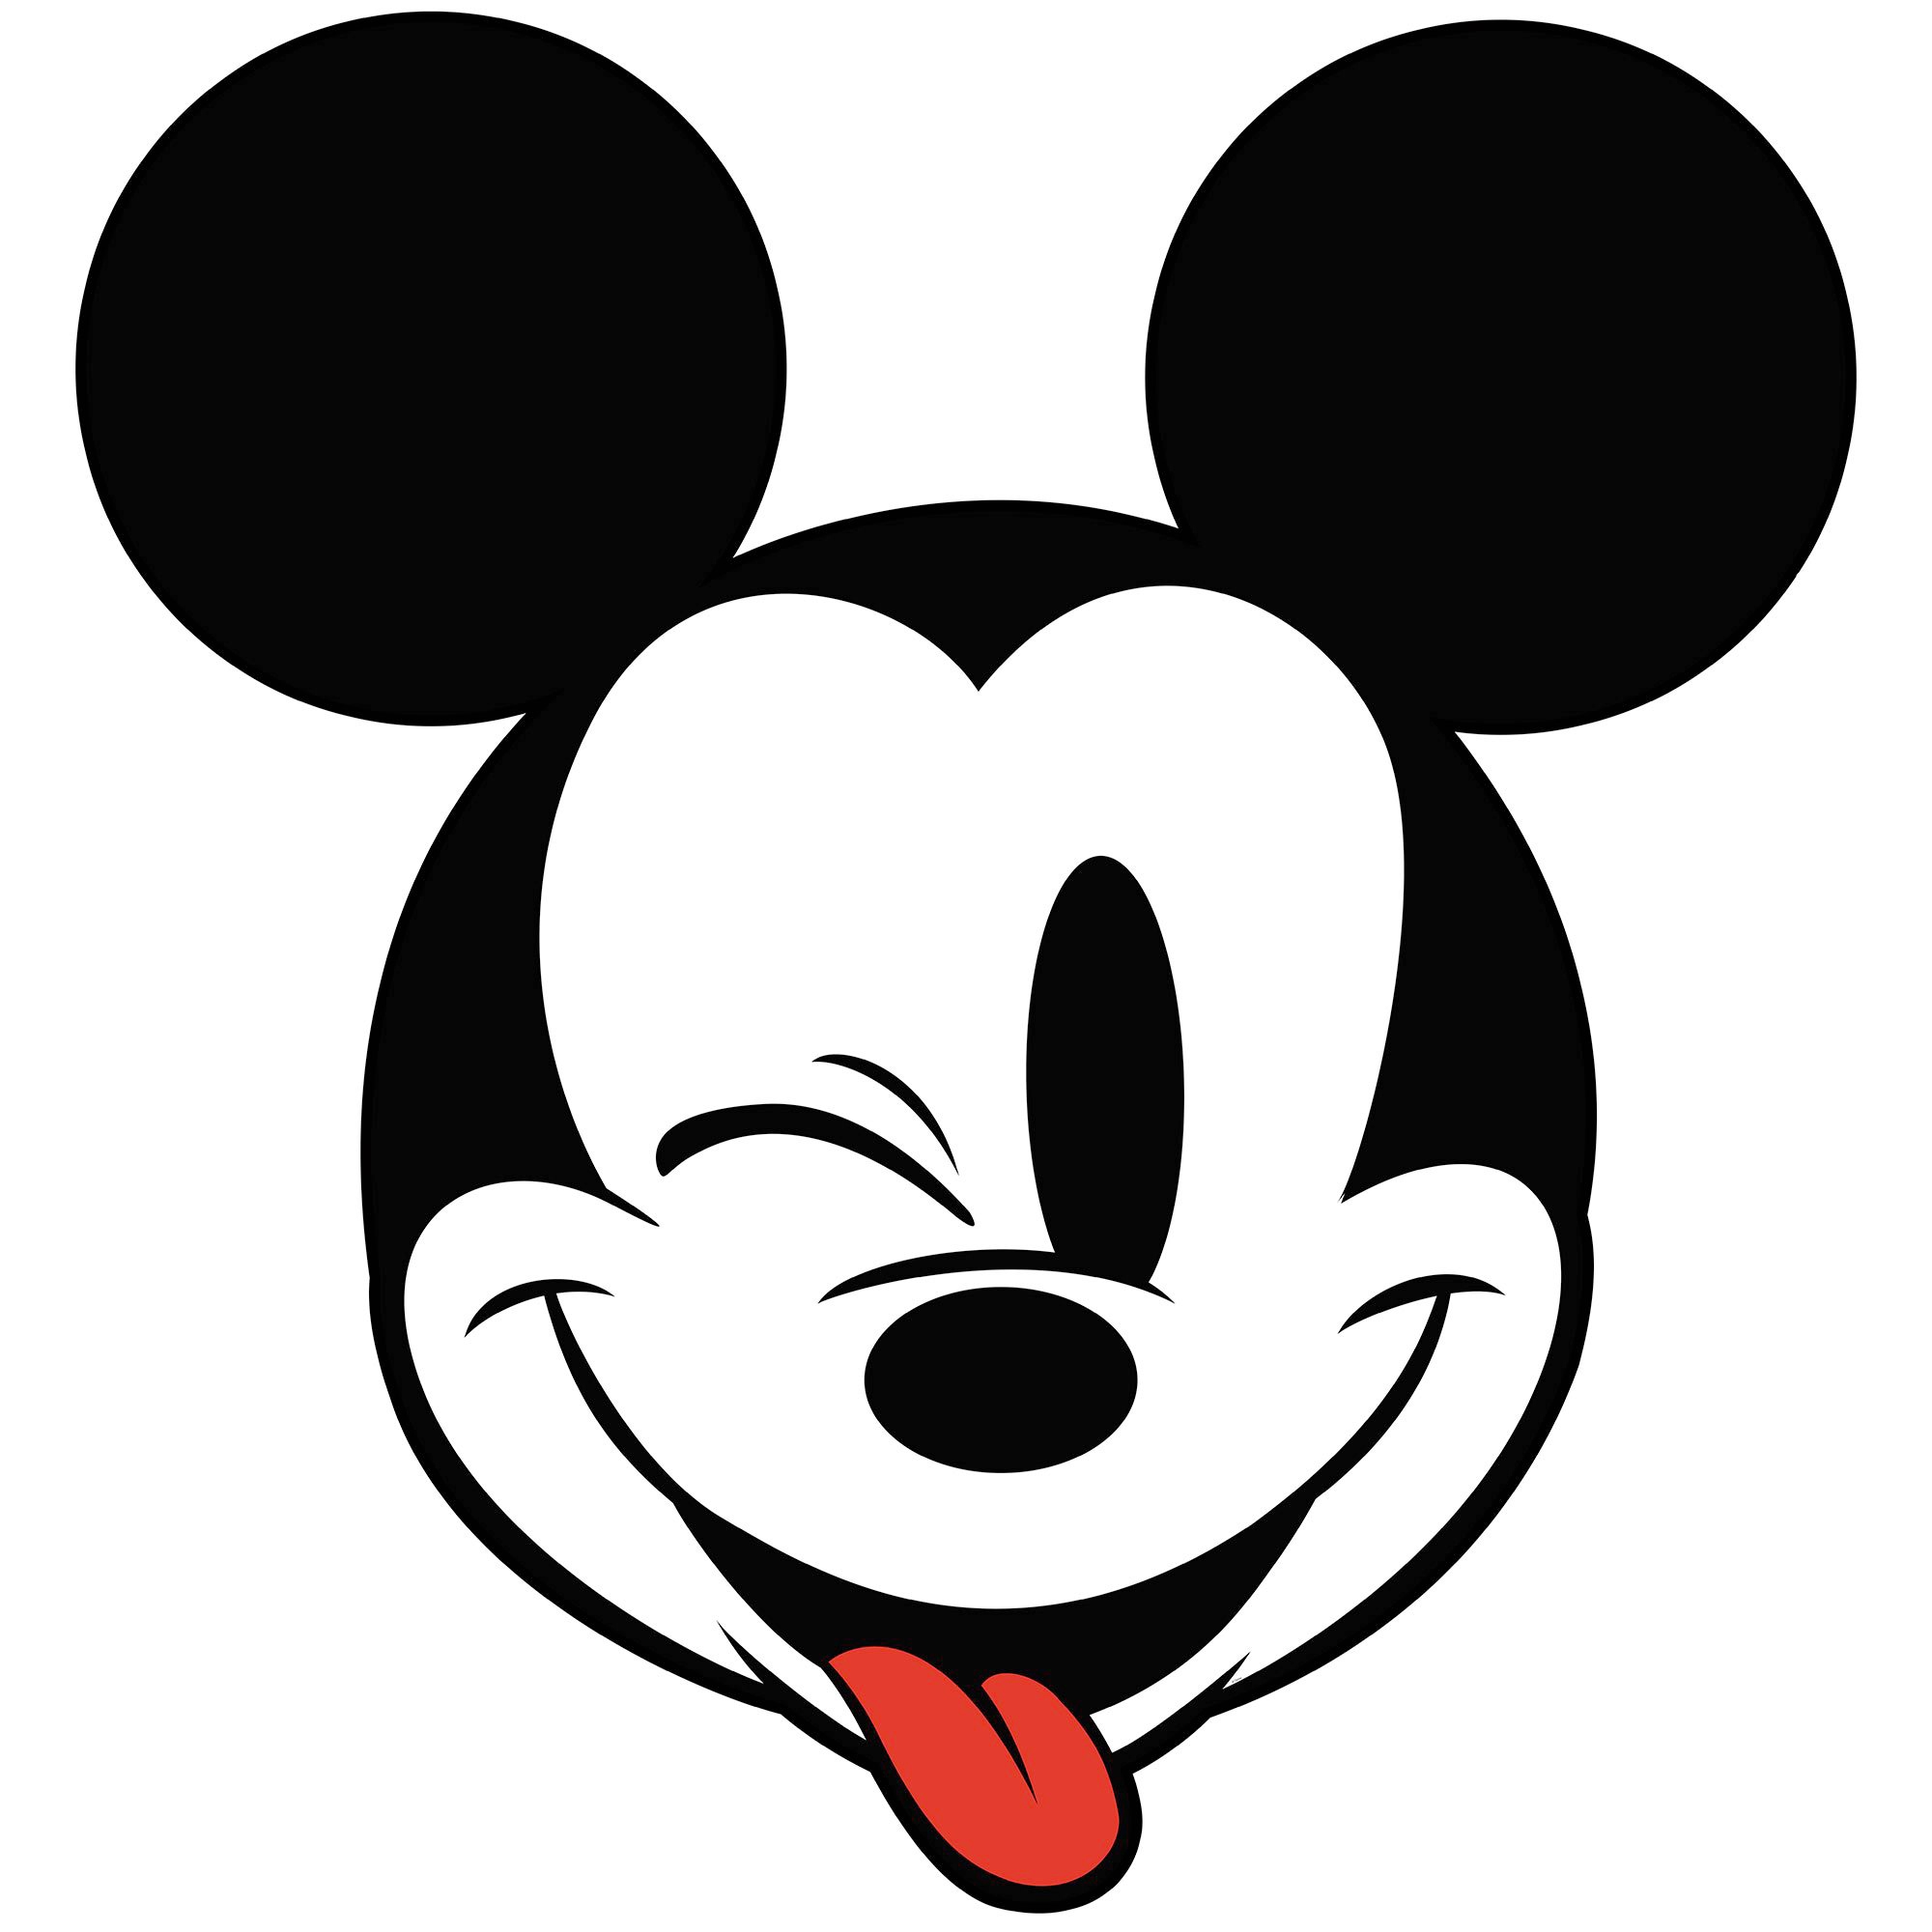 Fototapete »Mickey Head Optimism«, 125x125 cm (Breite x Höhe), rund und selbstklebend